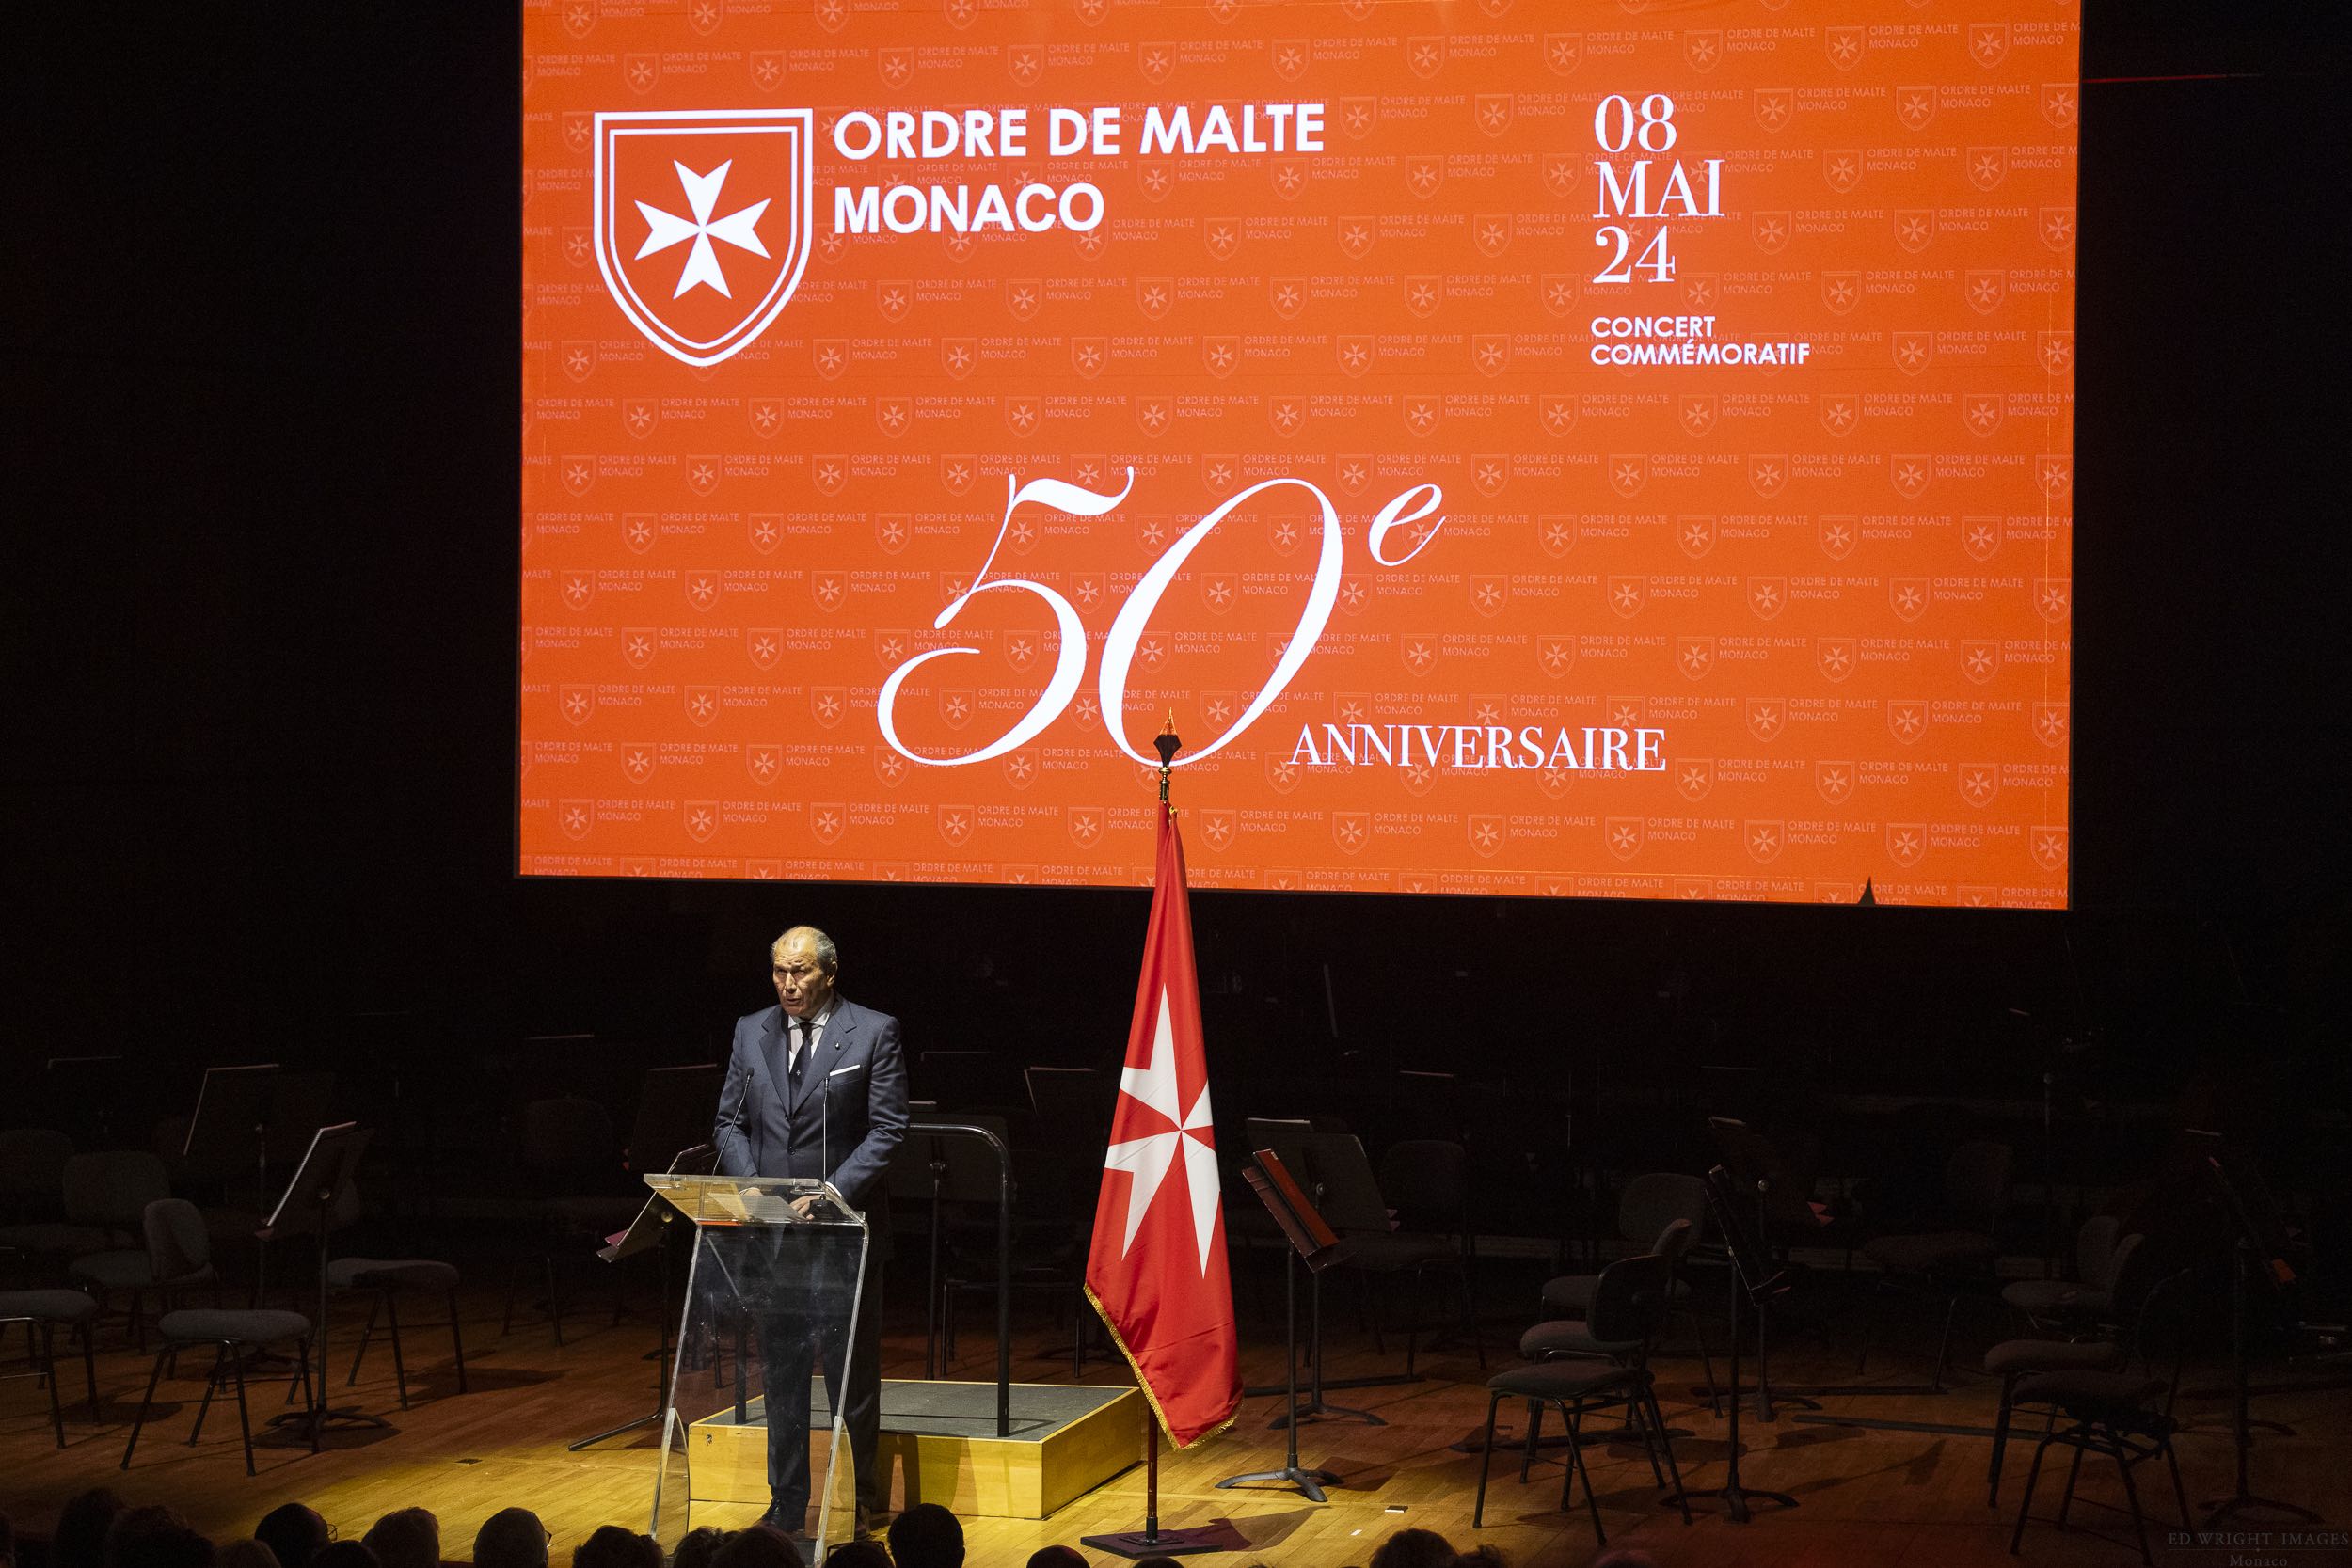 Die monegassische Assoziation des Malteserordens feiert Jubiläum: 50 Jahre